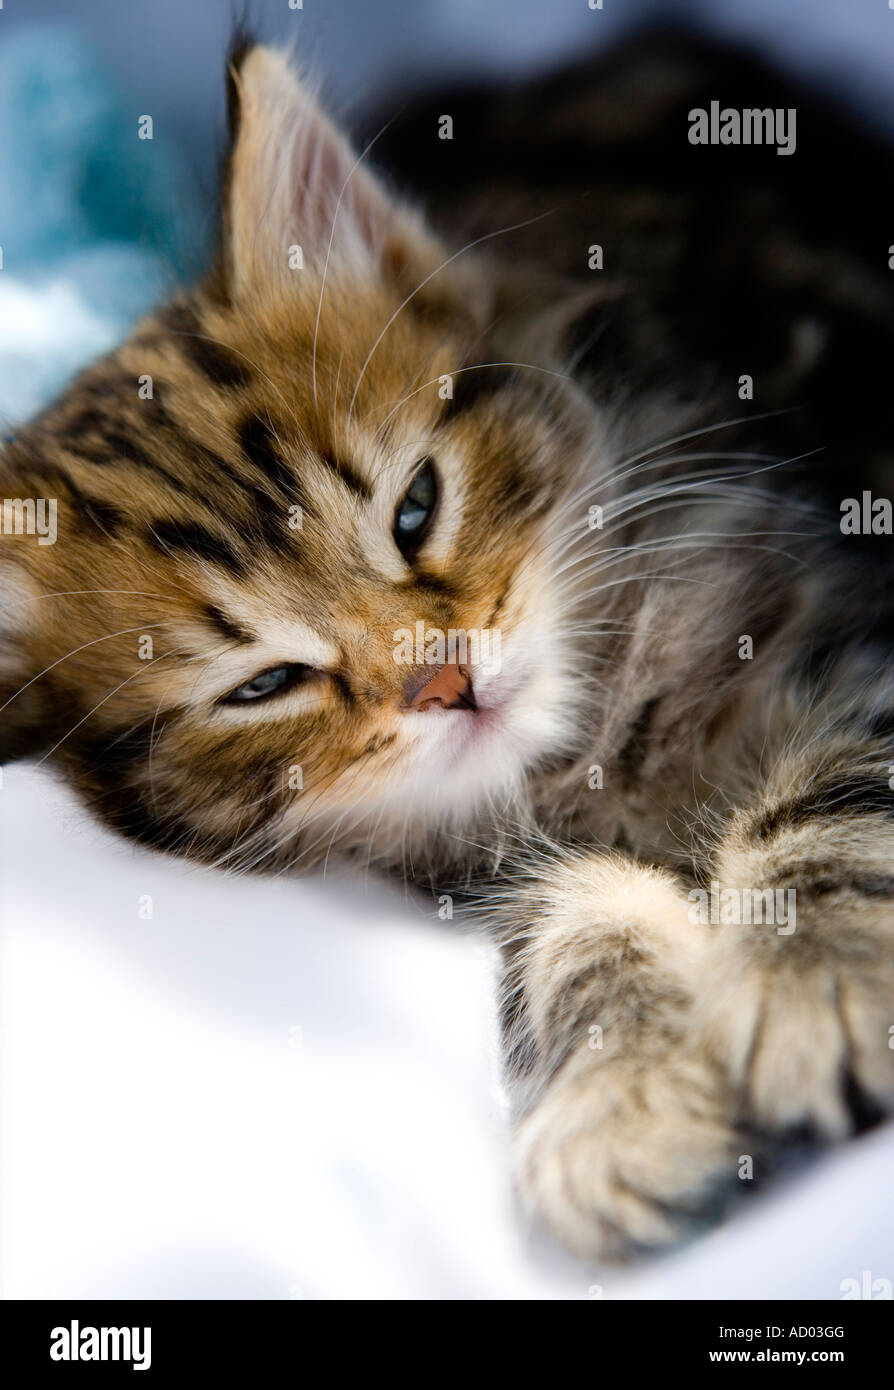 Tabby kitten dans une ambiance posent avec ses yeux à demi clos Banque D'Images